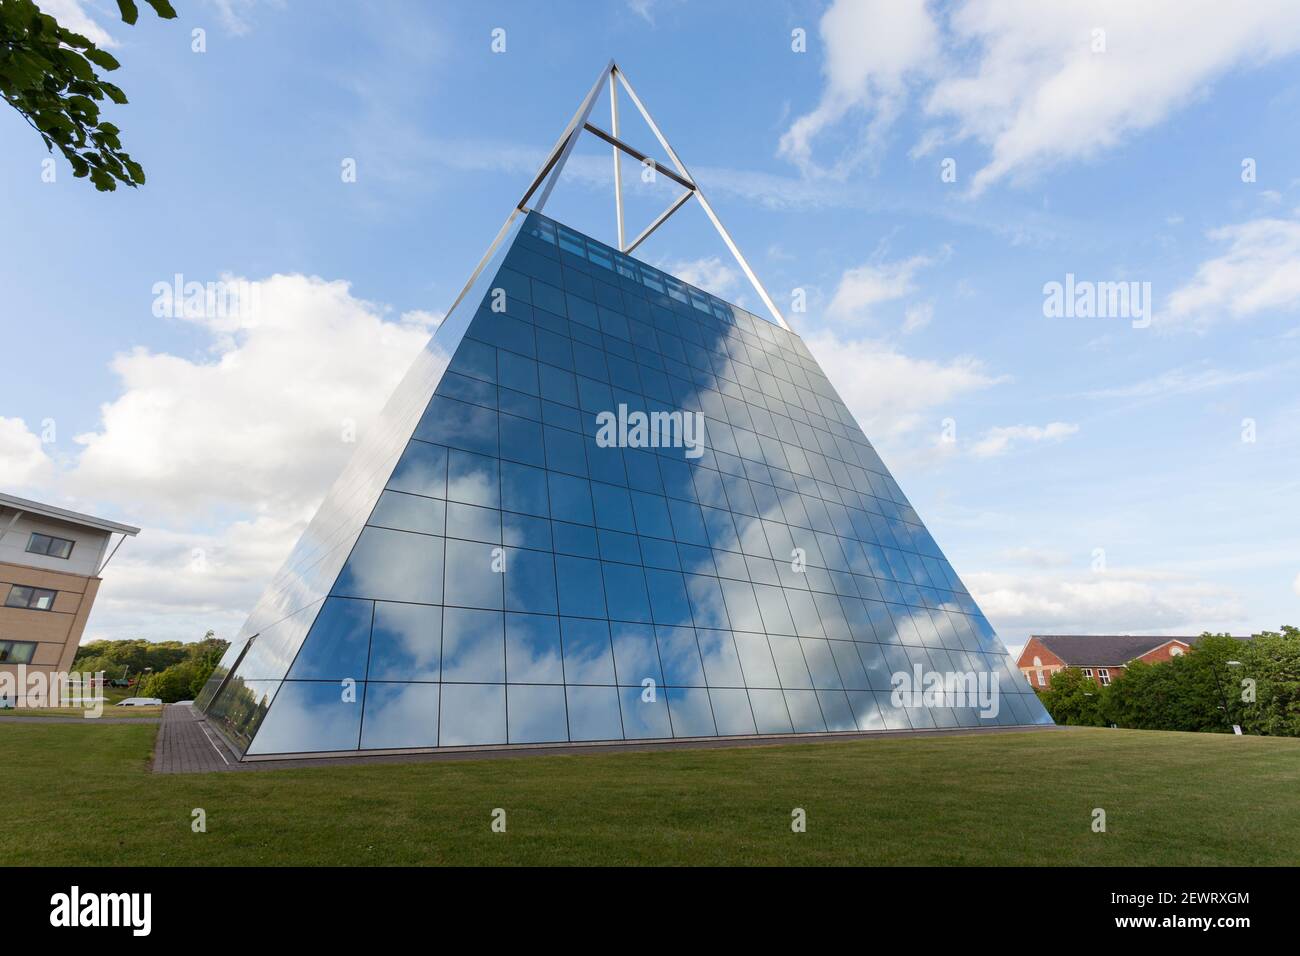 The inspire Pyramid at Hornbeam Park, Harrogate - un bâtiment de bureau en forme de pyramide de verre Banque D'Images